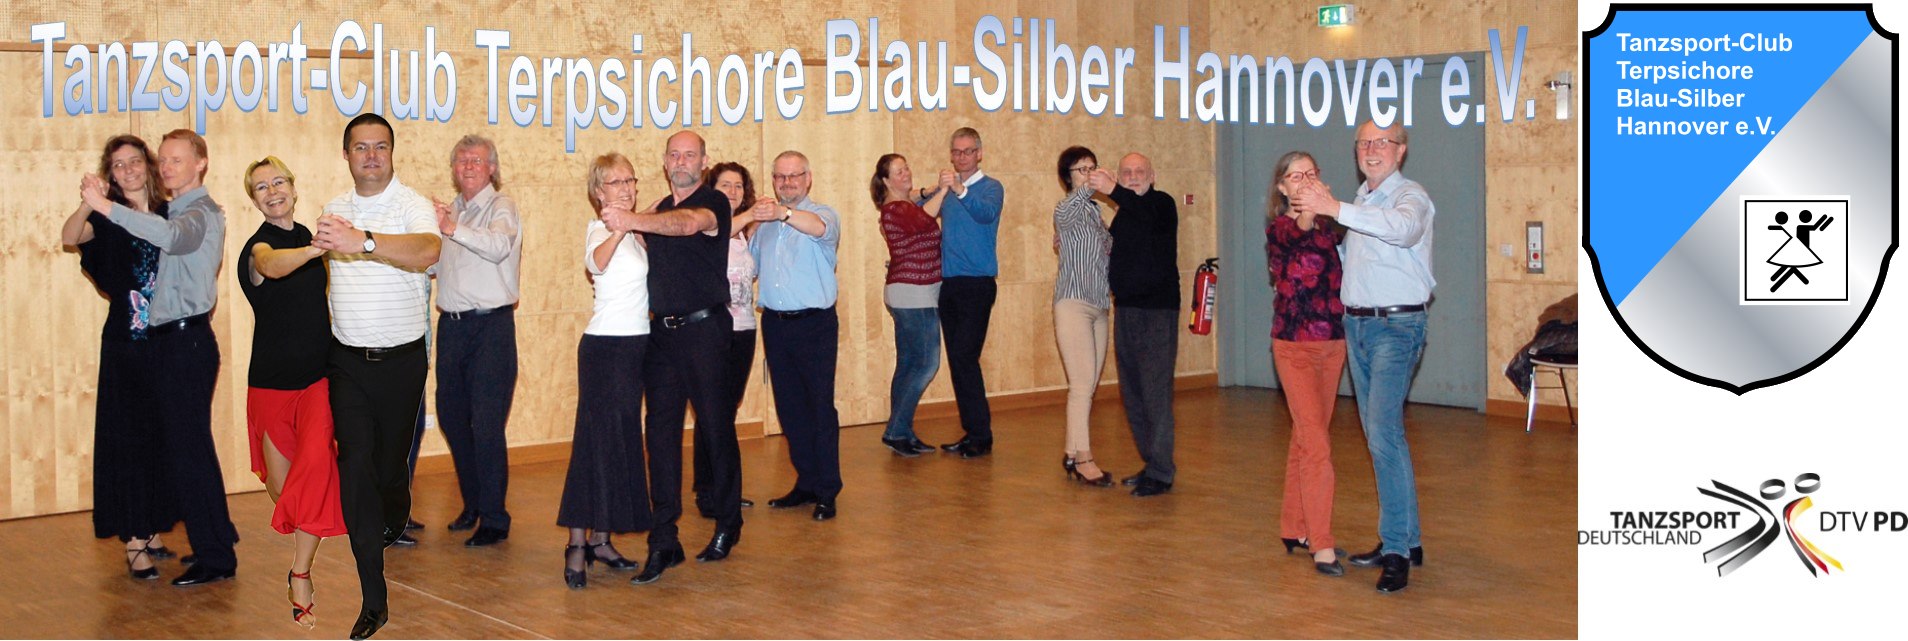 Tanzsport-Club Terpsichore Blau-Silber Hannover e.V.